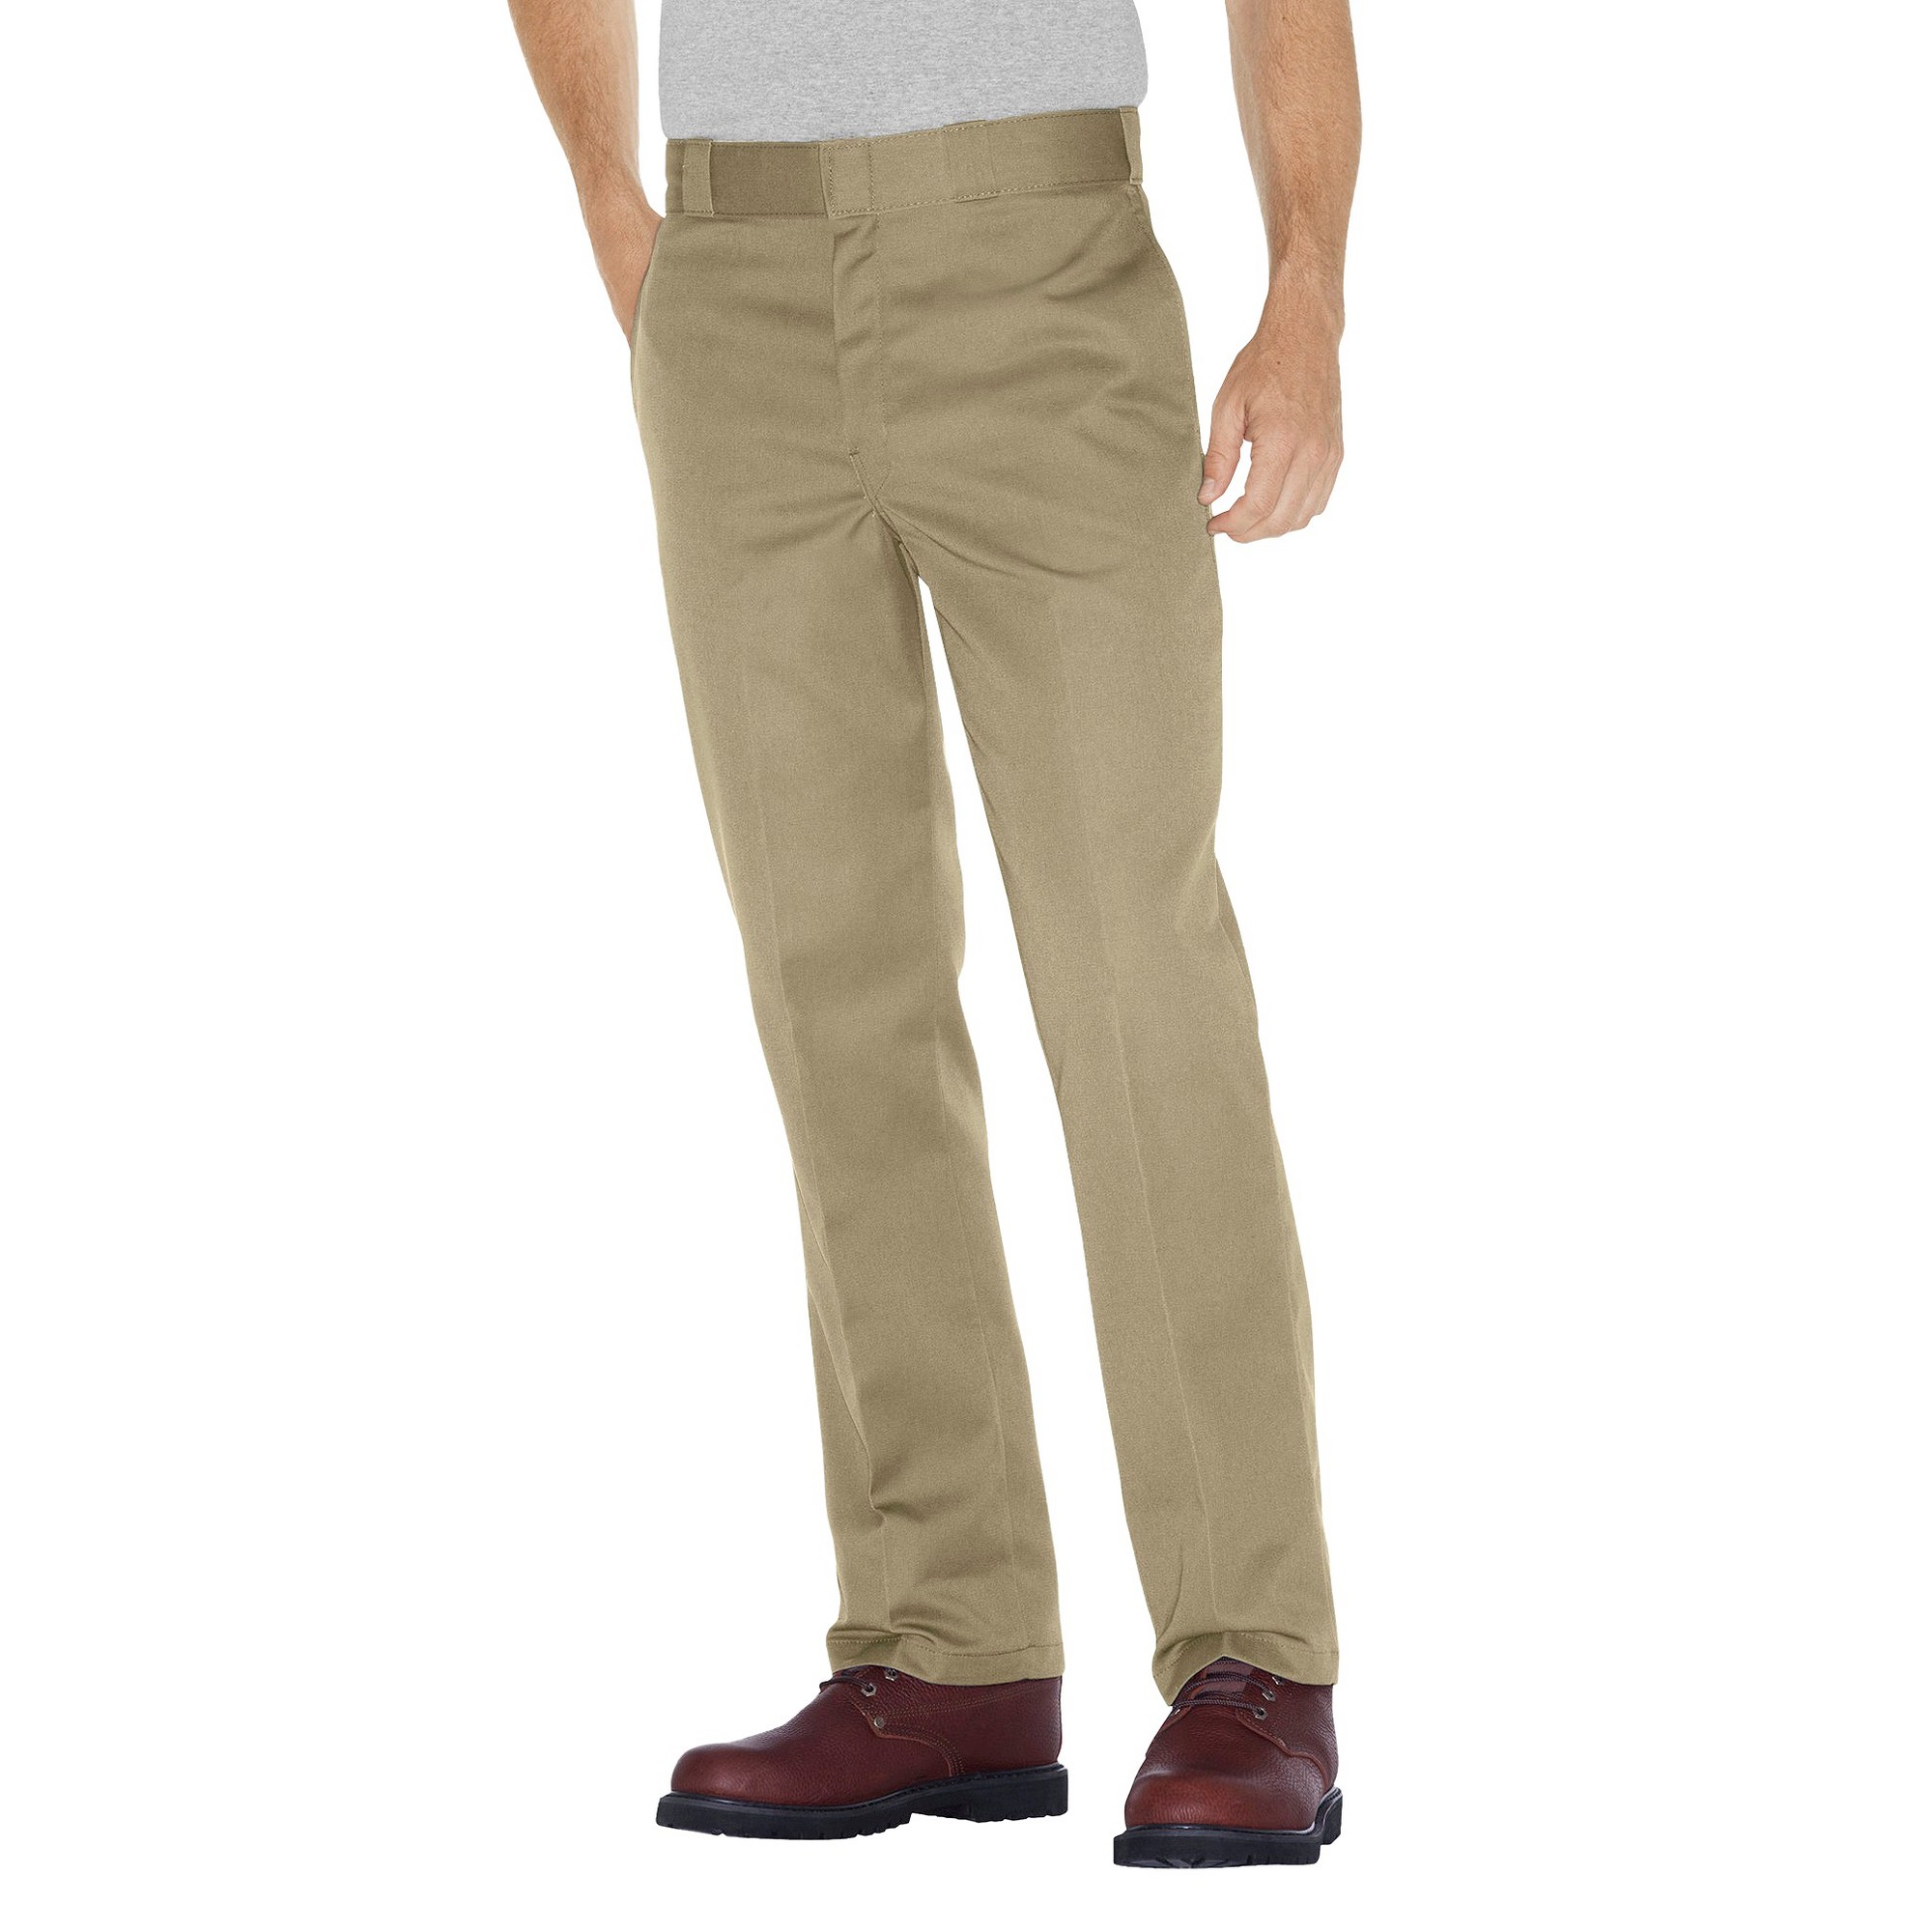 Dickies - Men's Big & Tall Original Fit 874 Twill Pants Khaki 54x32, Green